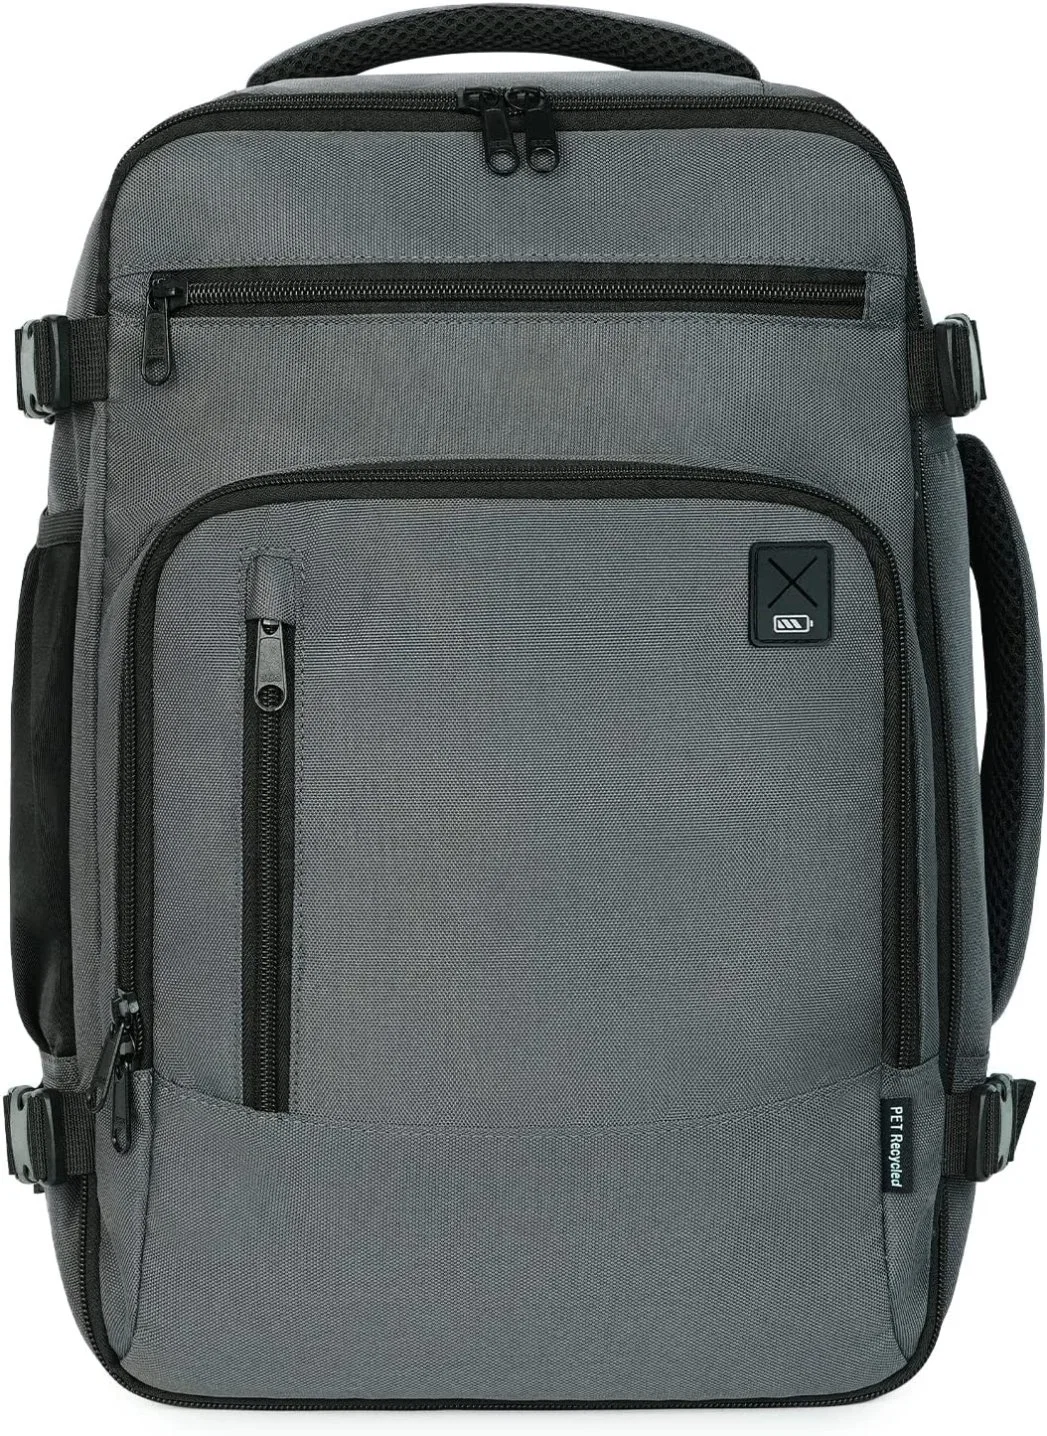 Сумка для салона 40X20X25 рюкзак для ручной клади для перевозки багажа из переработанного полиэтилентерефталата Eco Friendly под сиденьем сумка для переноски 20L, водонепроницаемый рюкзак для спорта на открытом воздухе